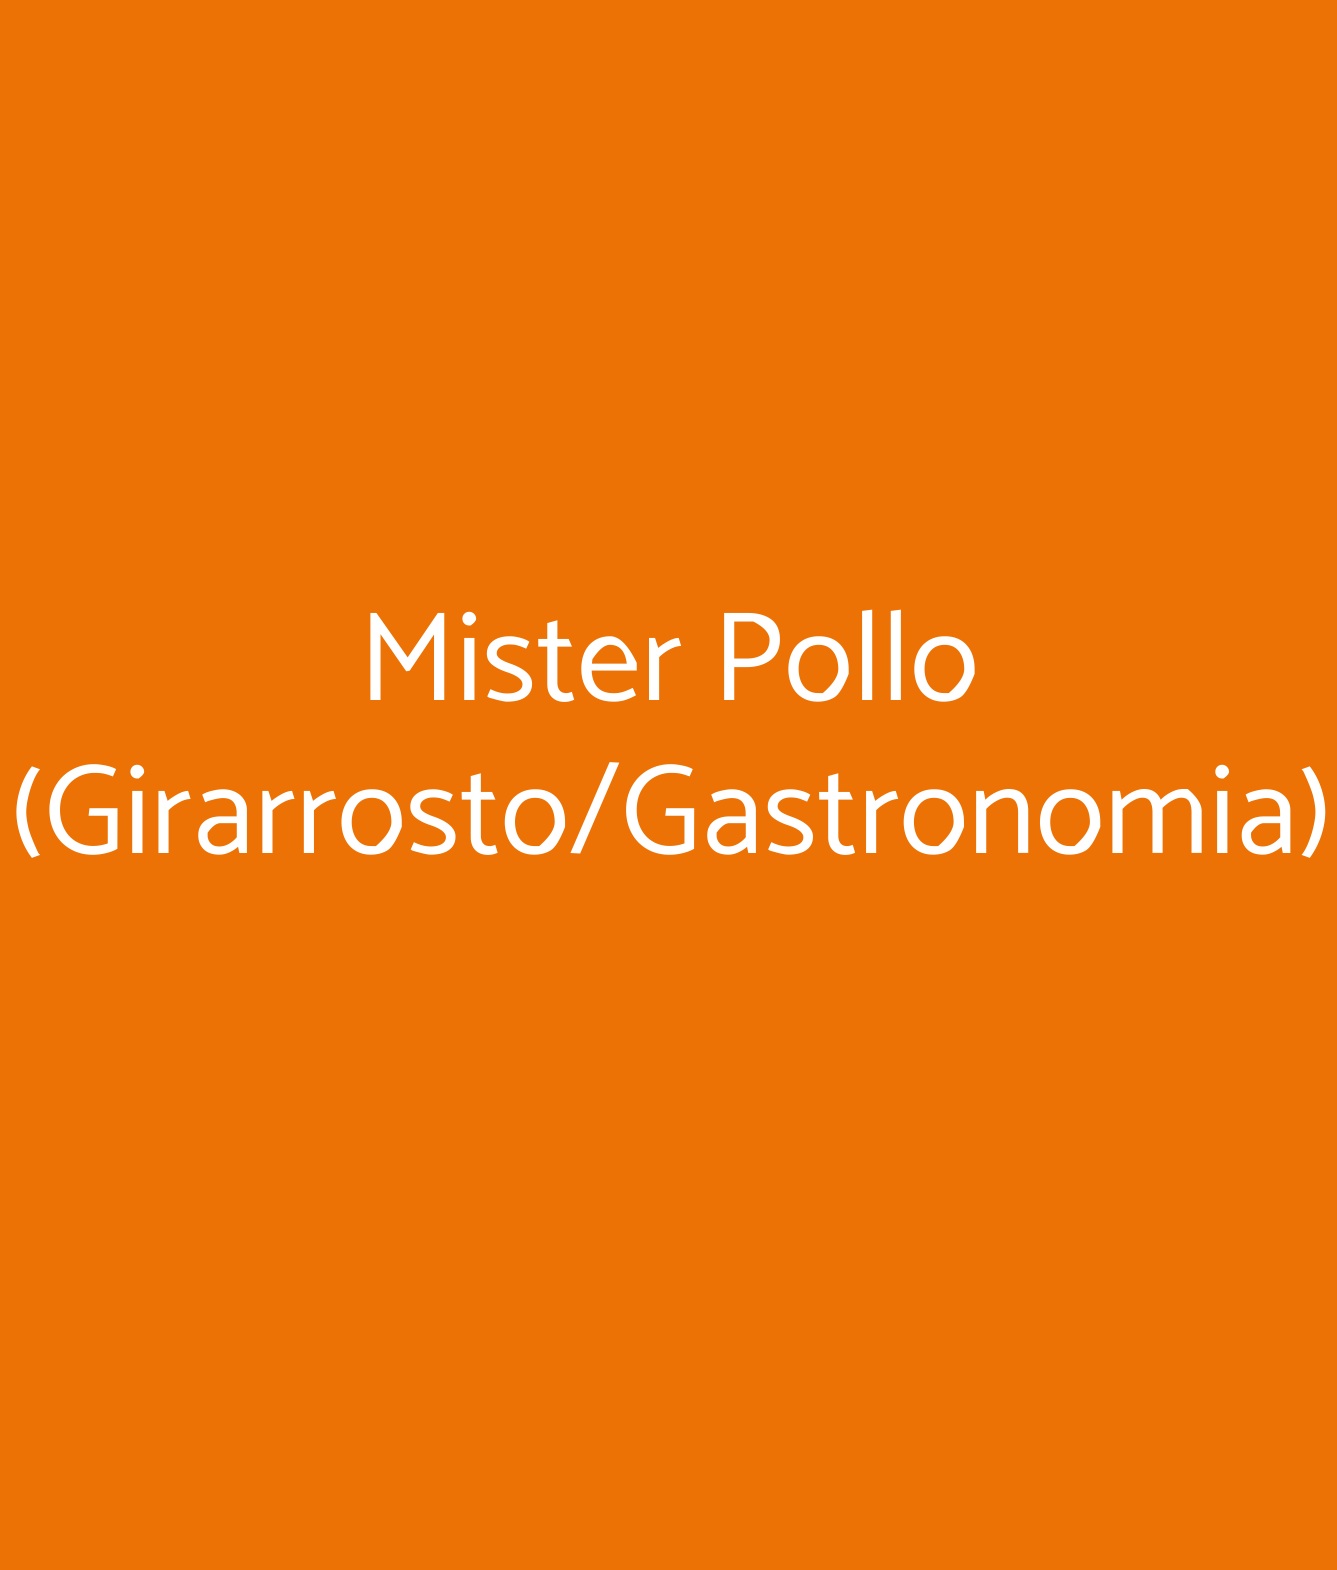 Mister Pollo (Girarrosto/Gastronomia) Marsala menù 1 pagina